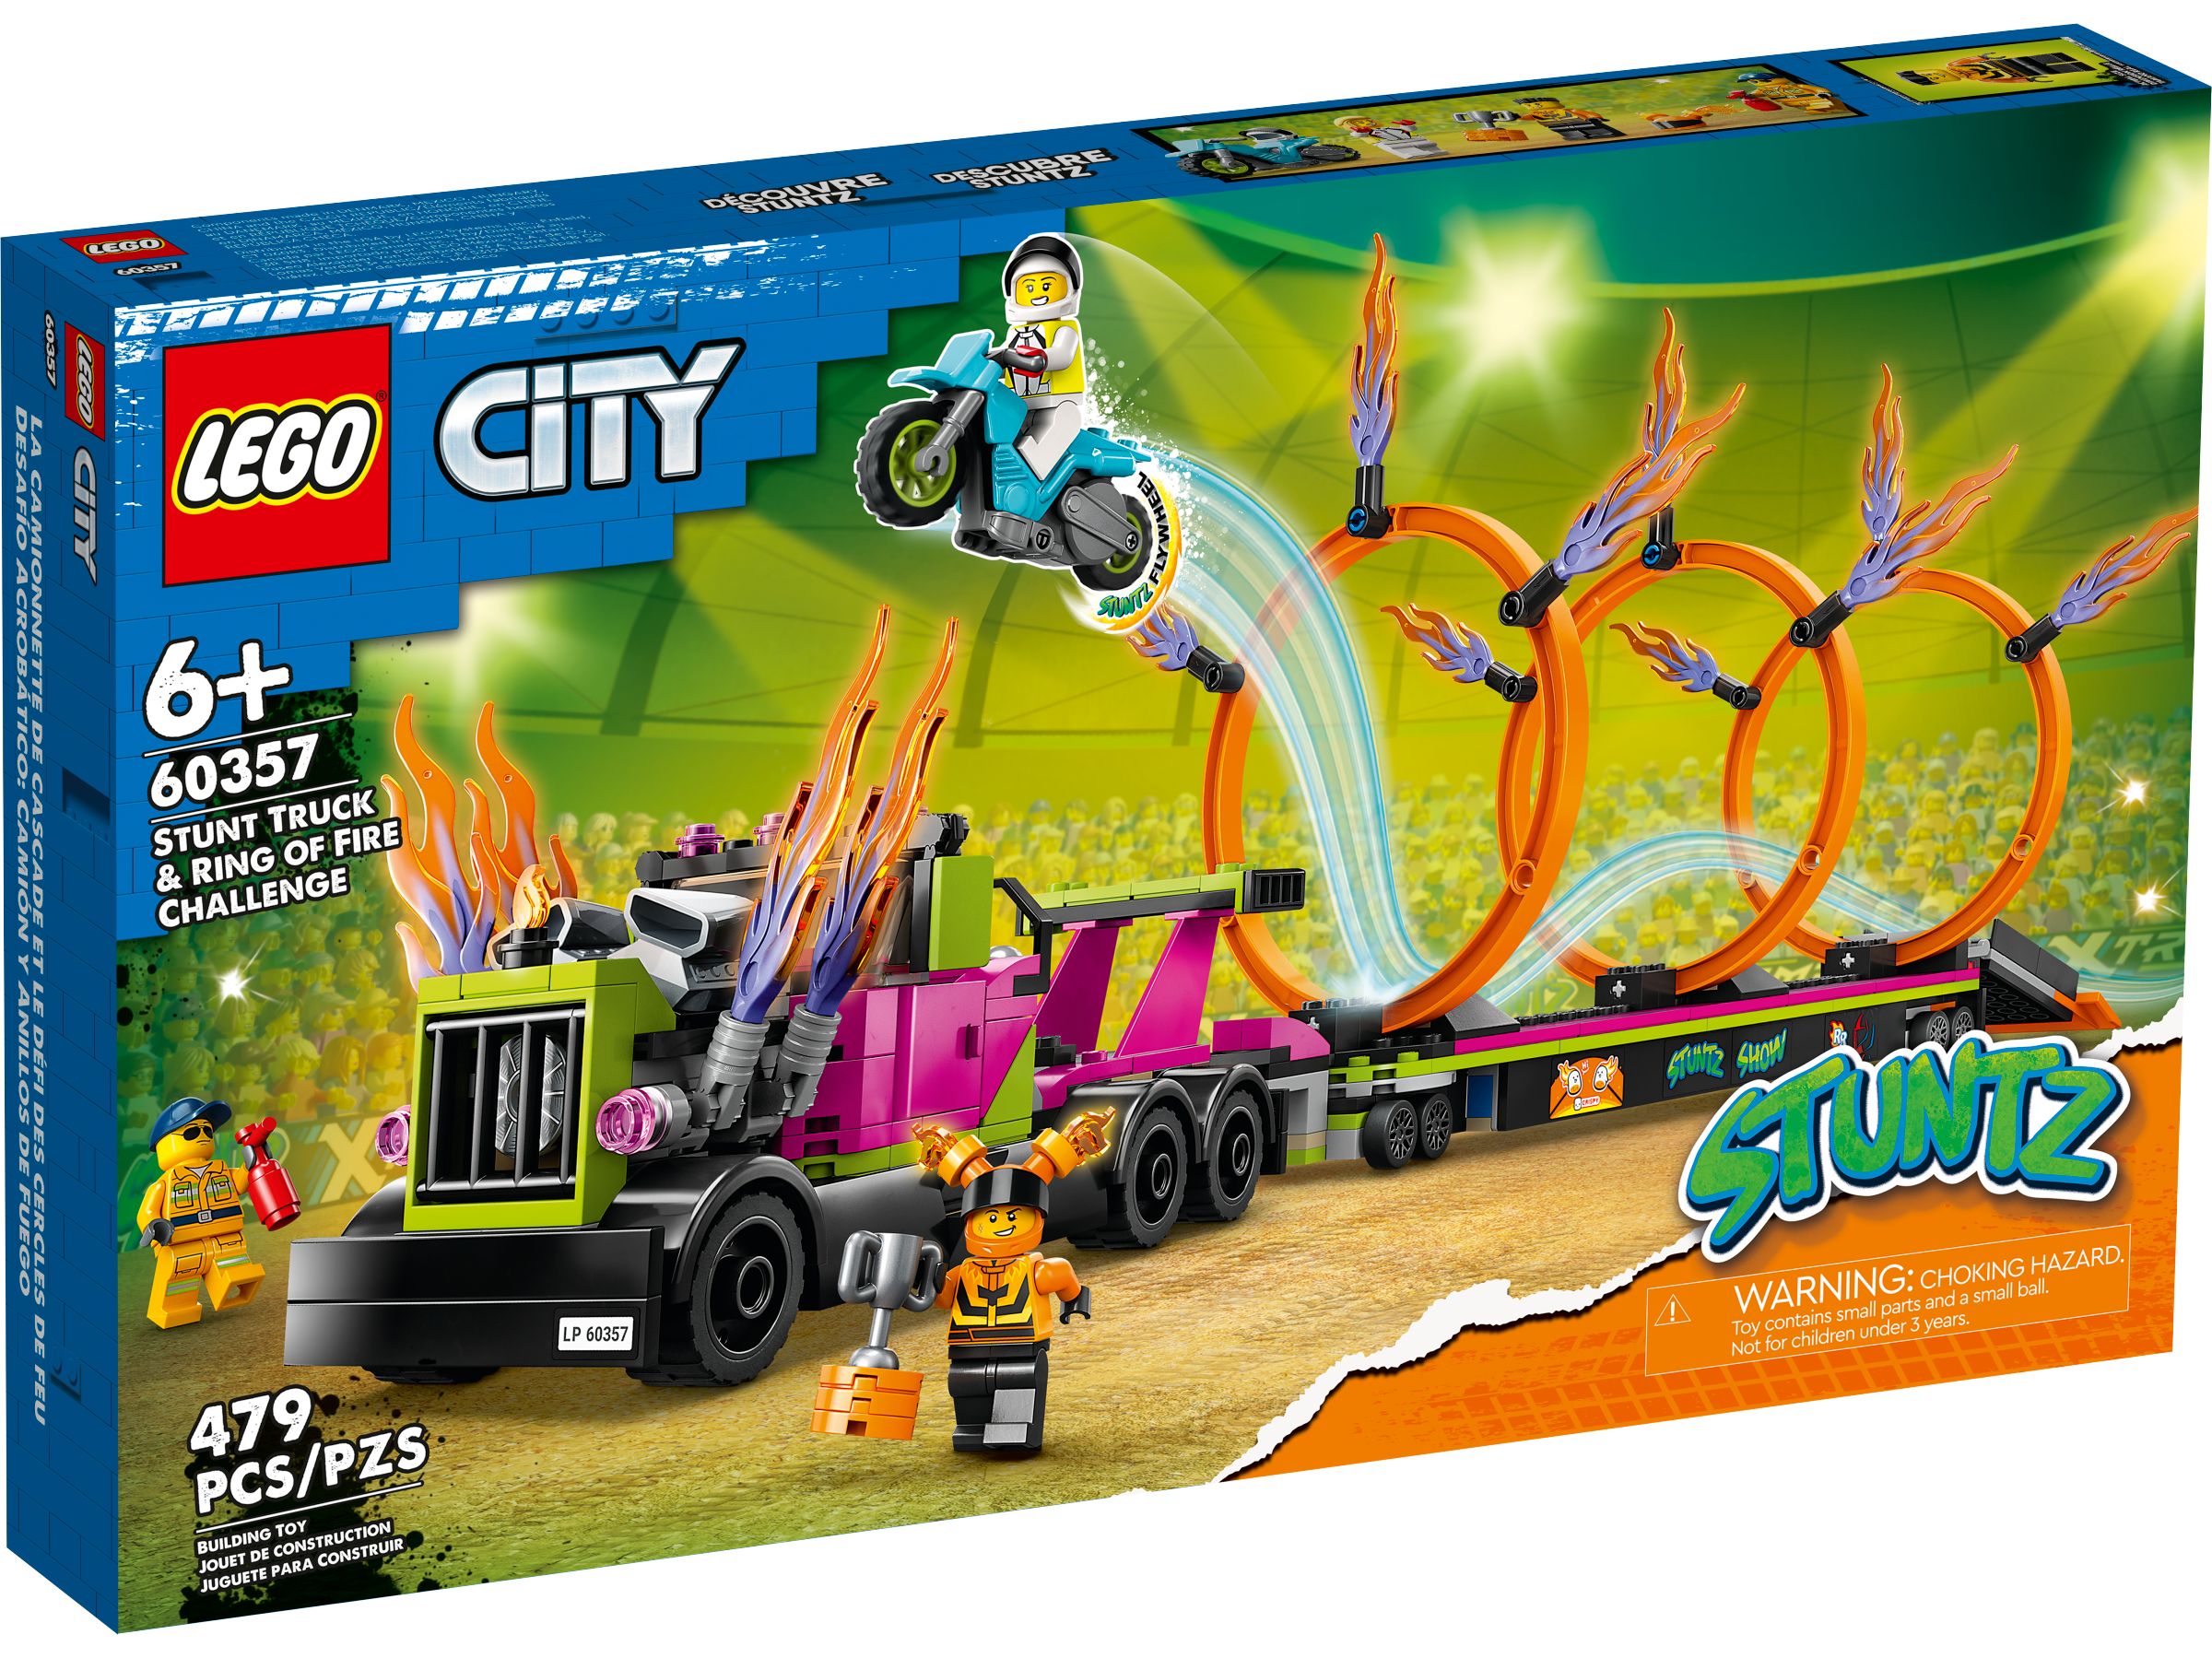 LEGO City 60357 Stunttruck & Feuerreifen-Challenge LEGO_60357_alt1.jpg